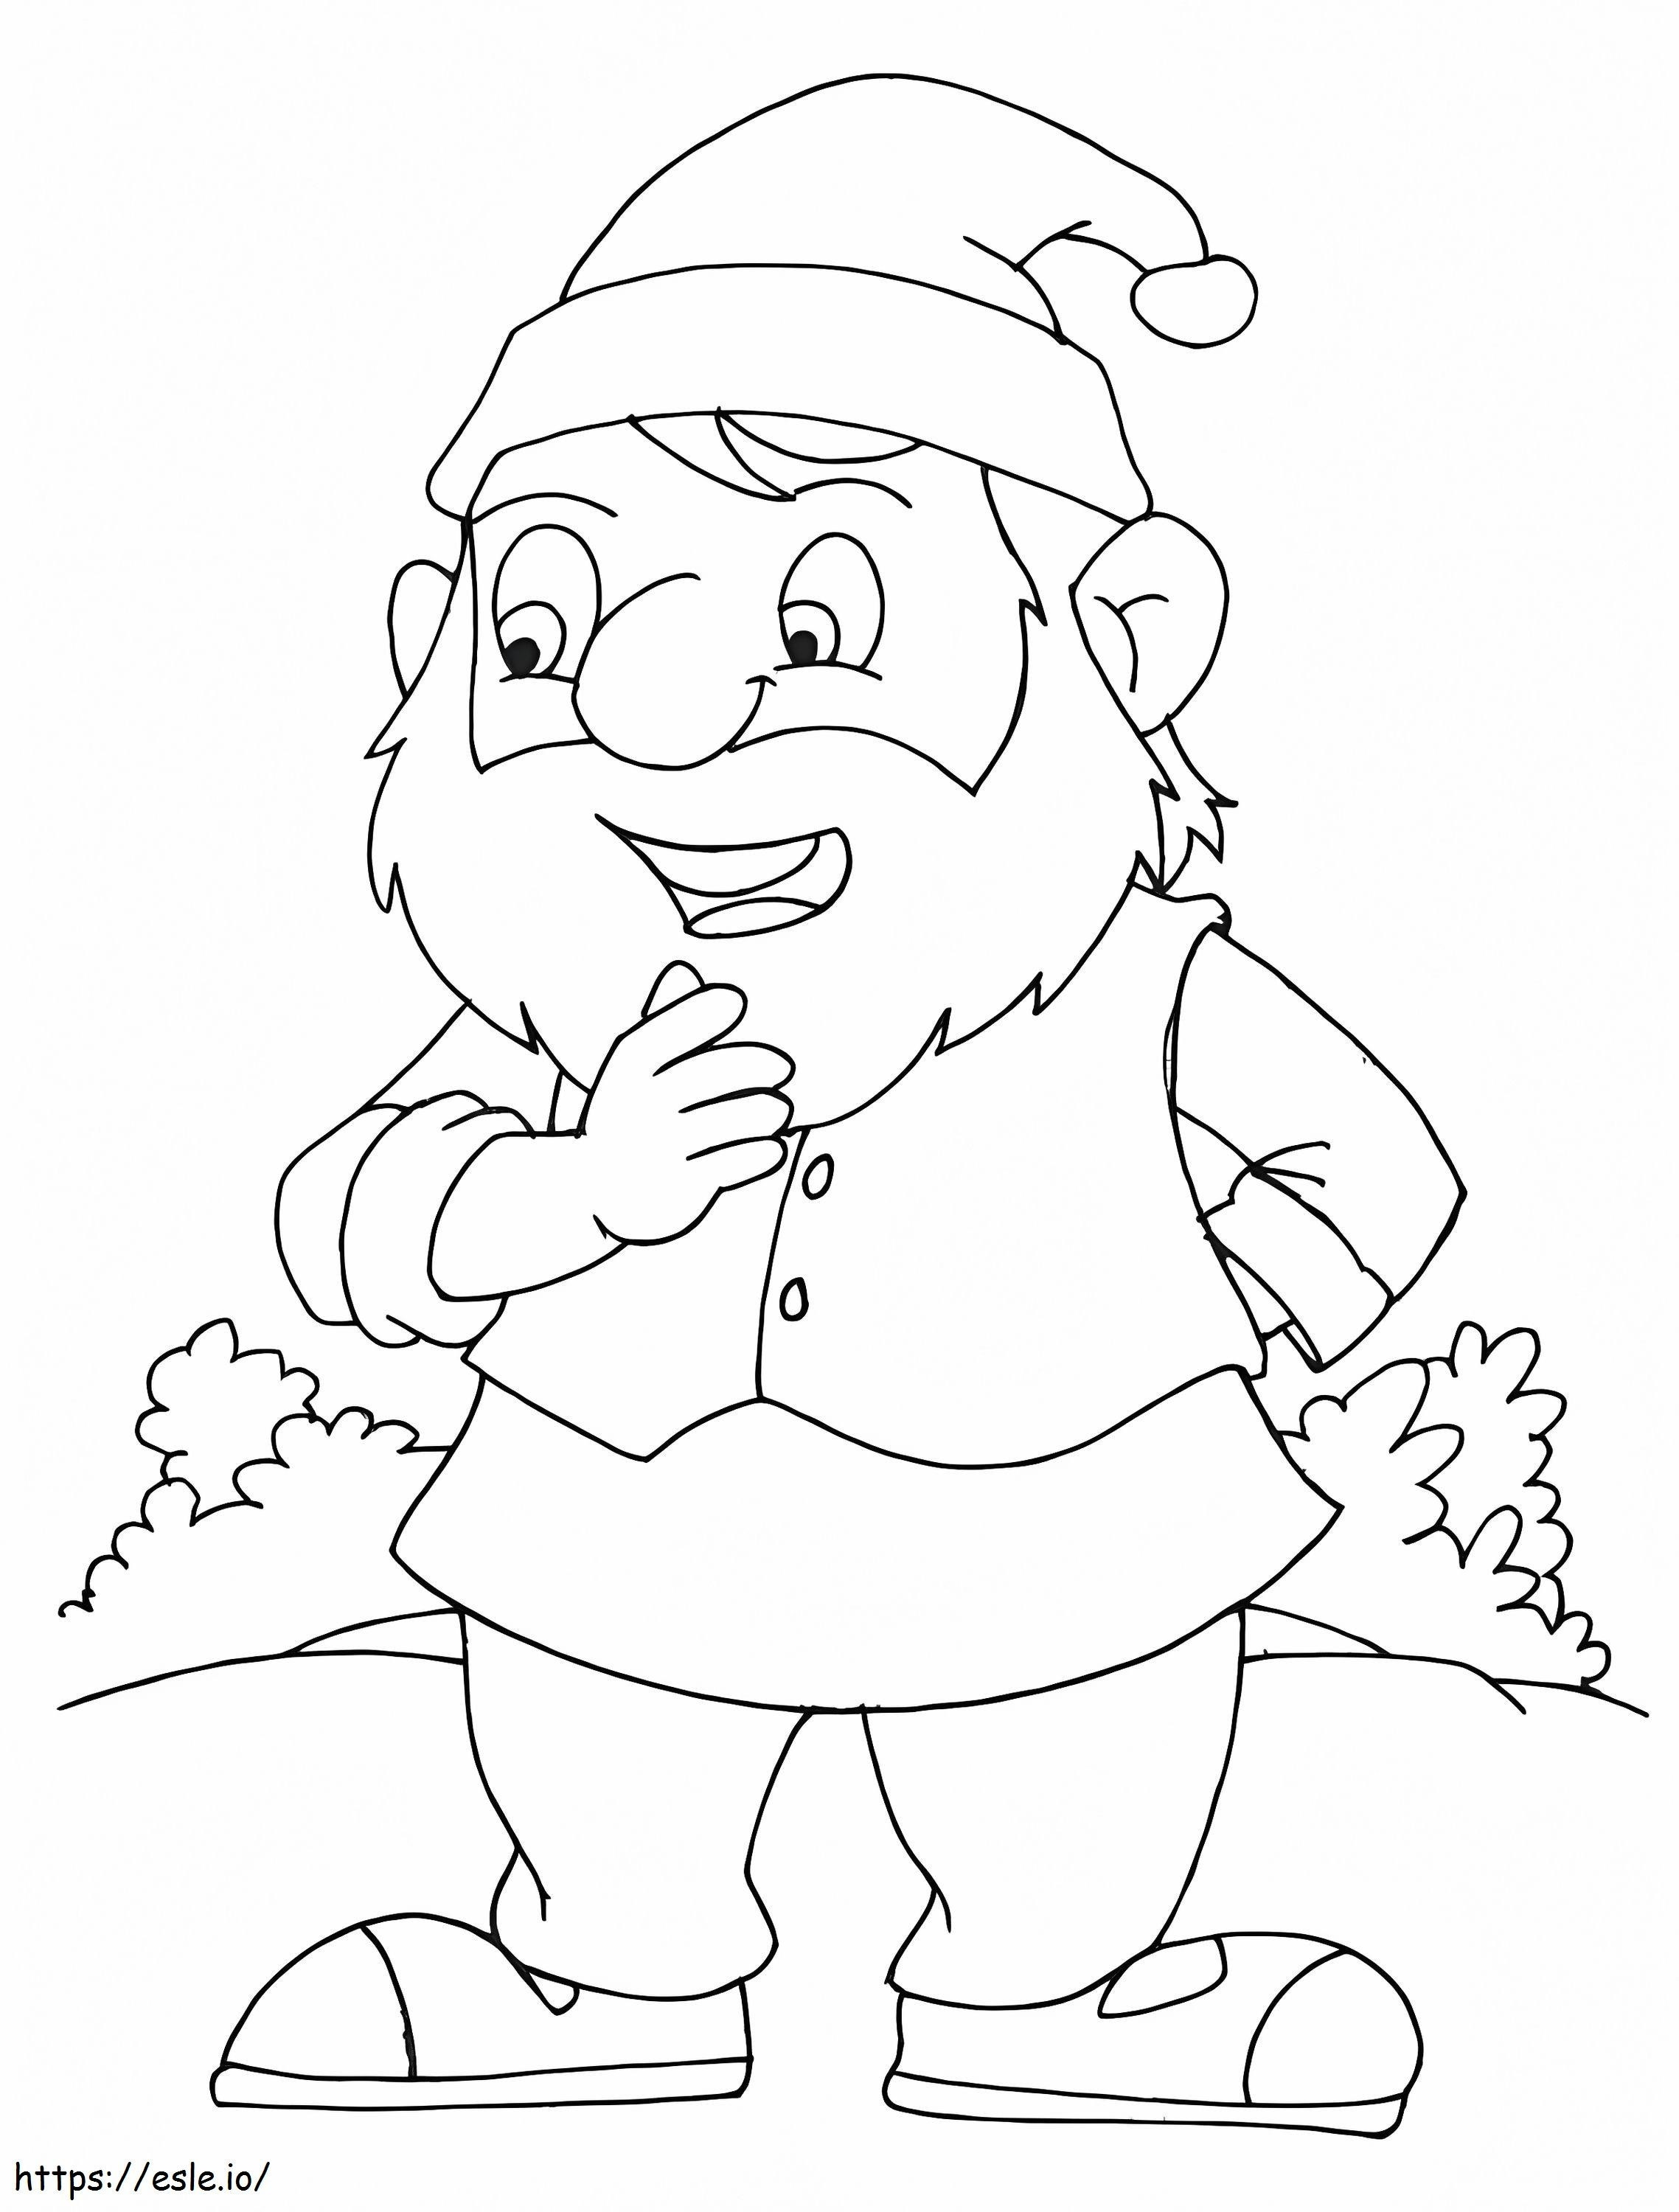 Bashful Dwarf coloring page